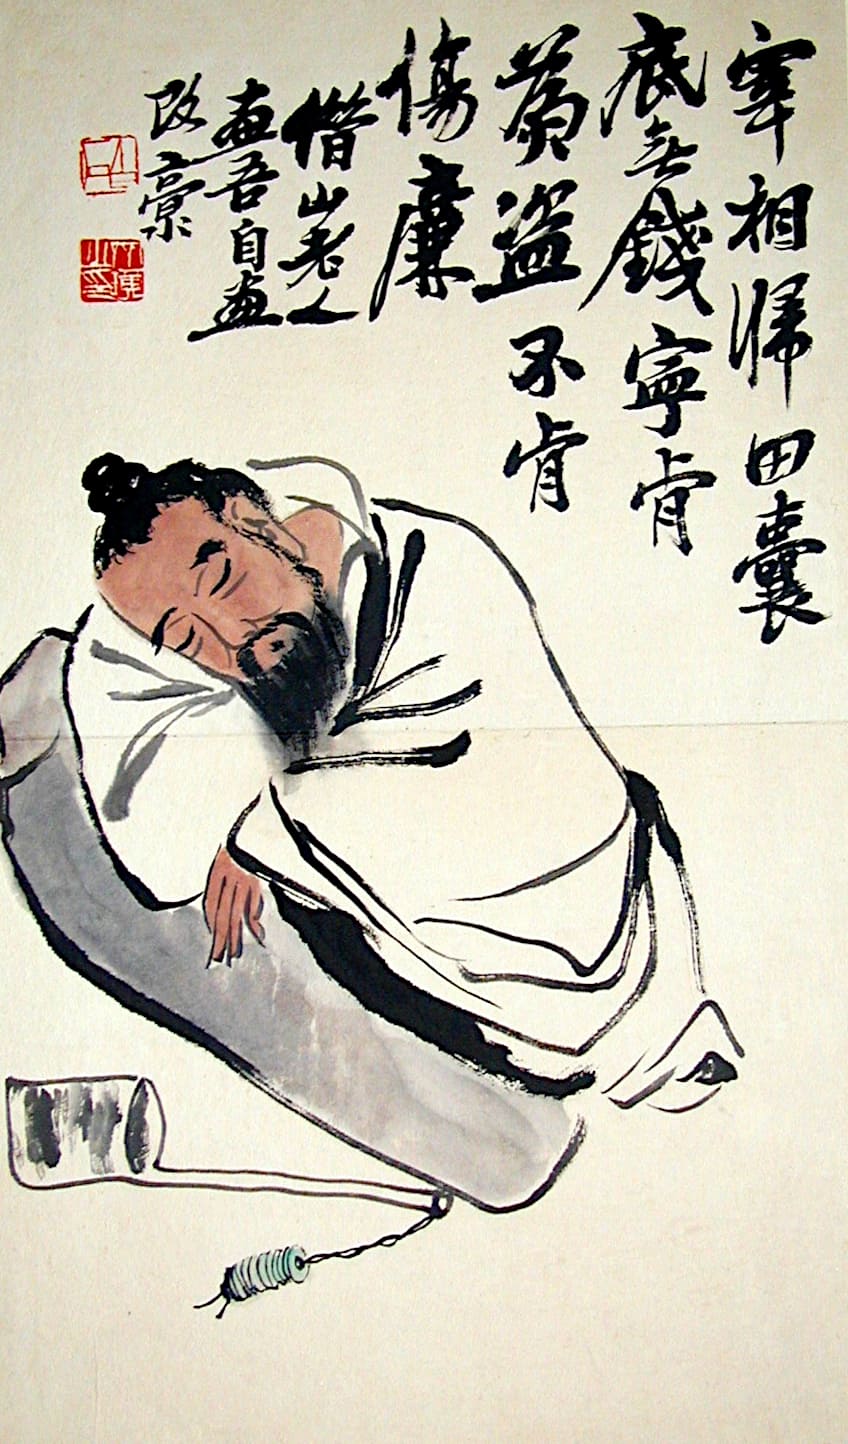 1920s Chinese Art Movements